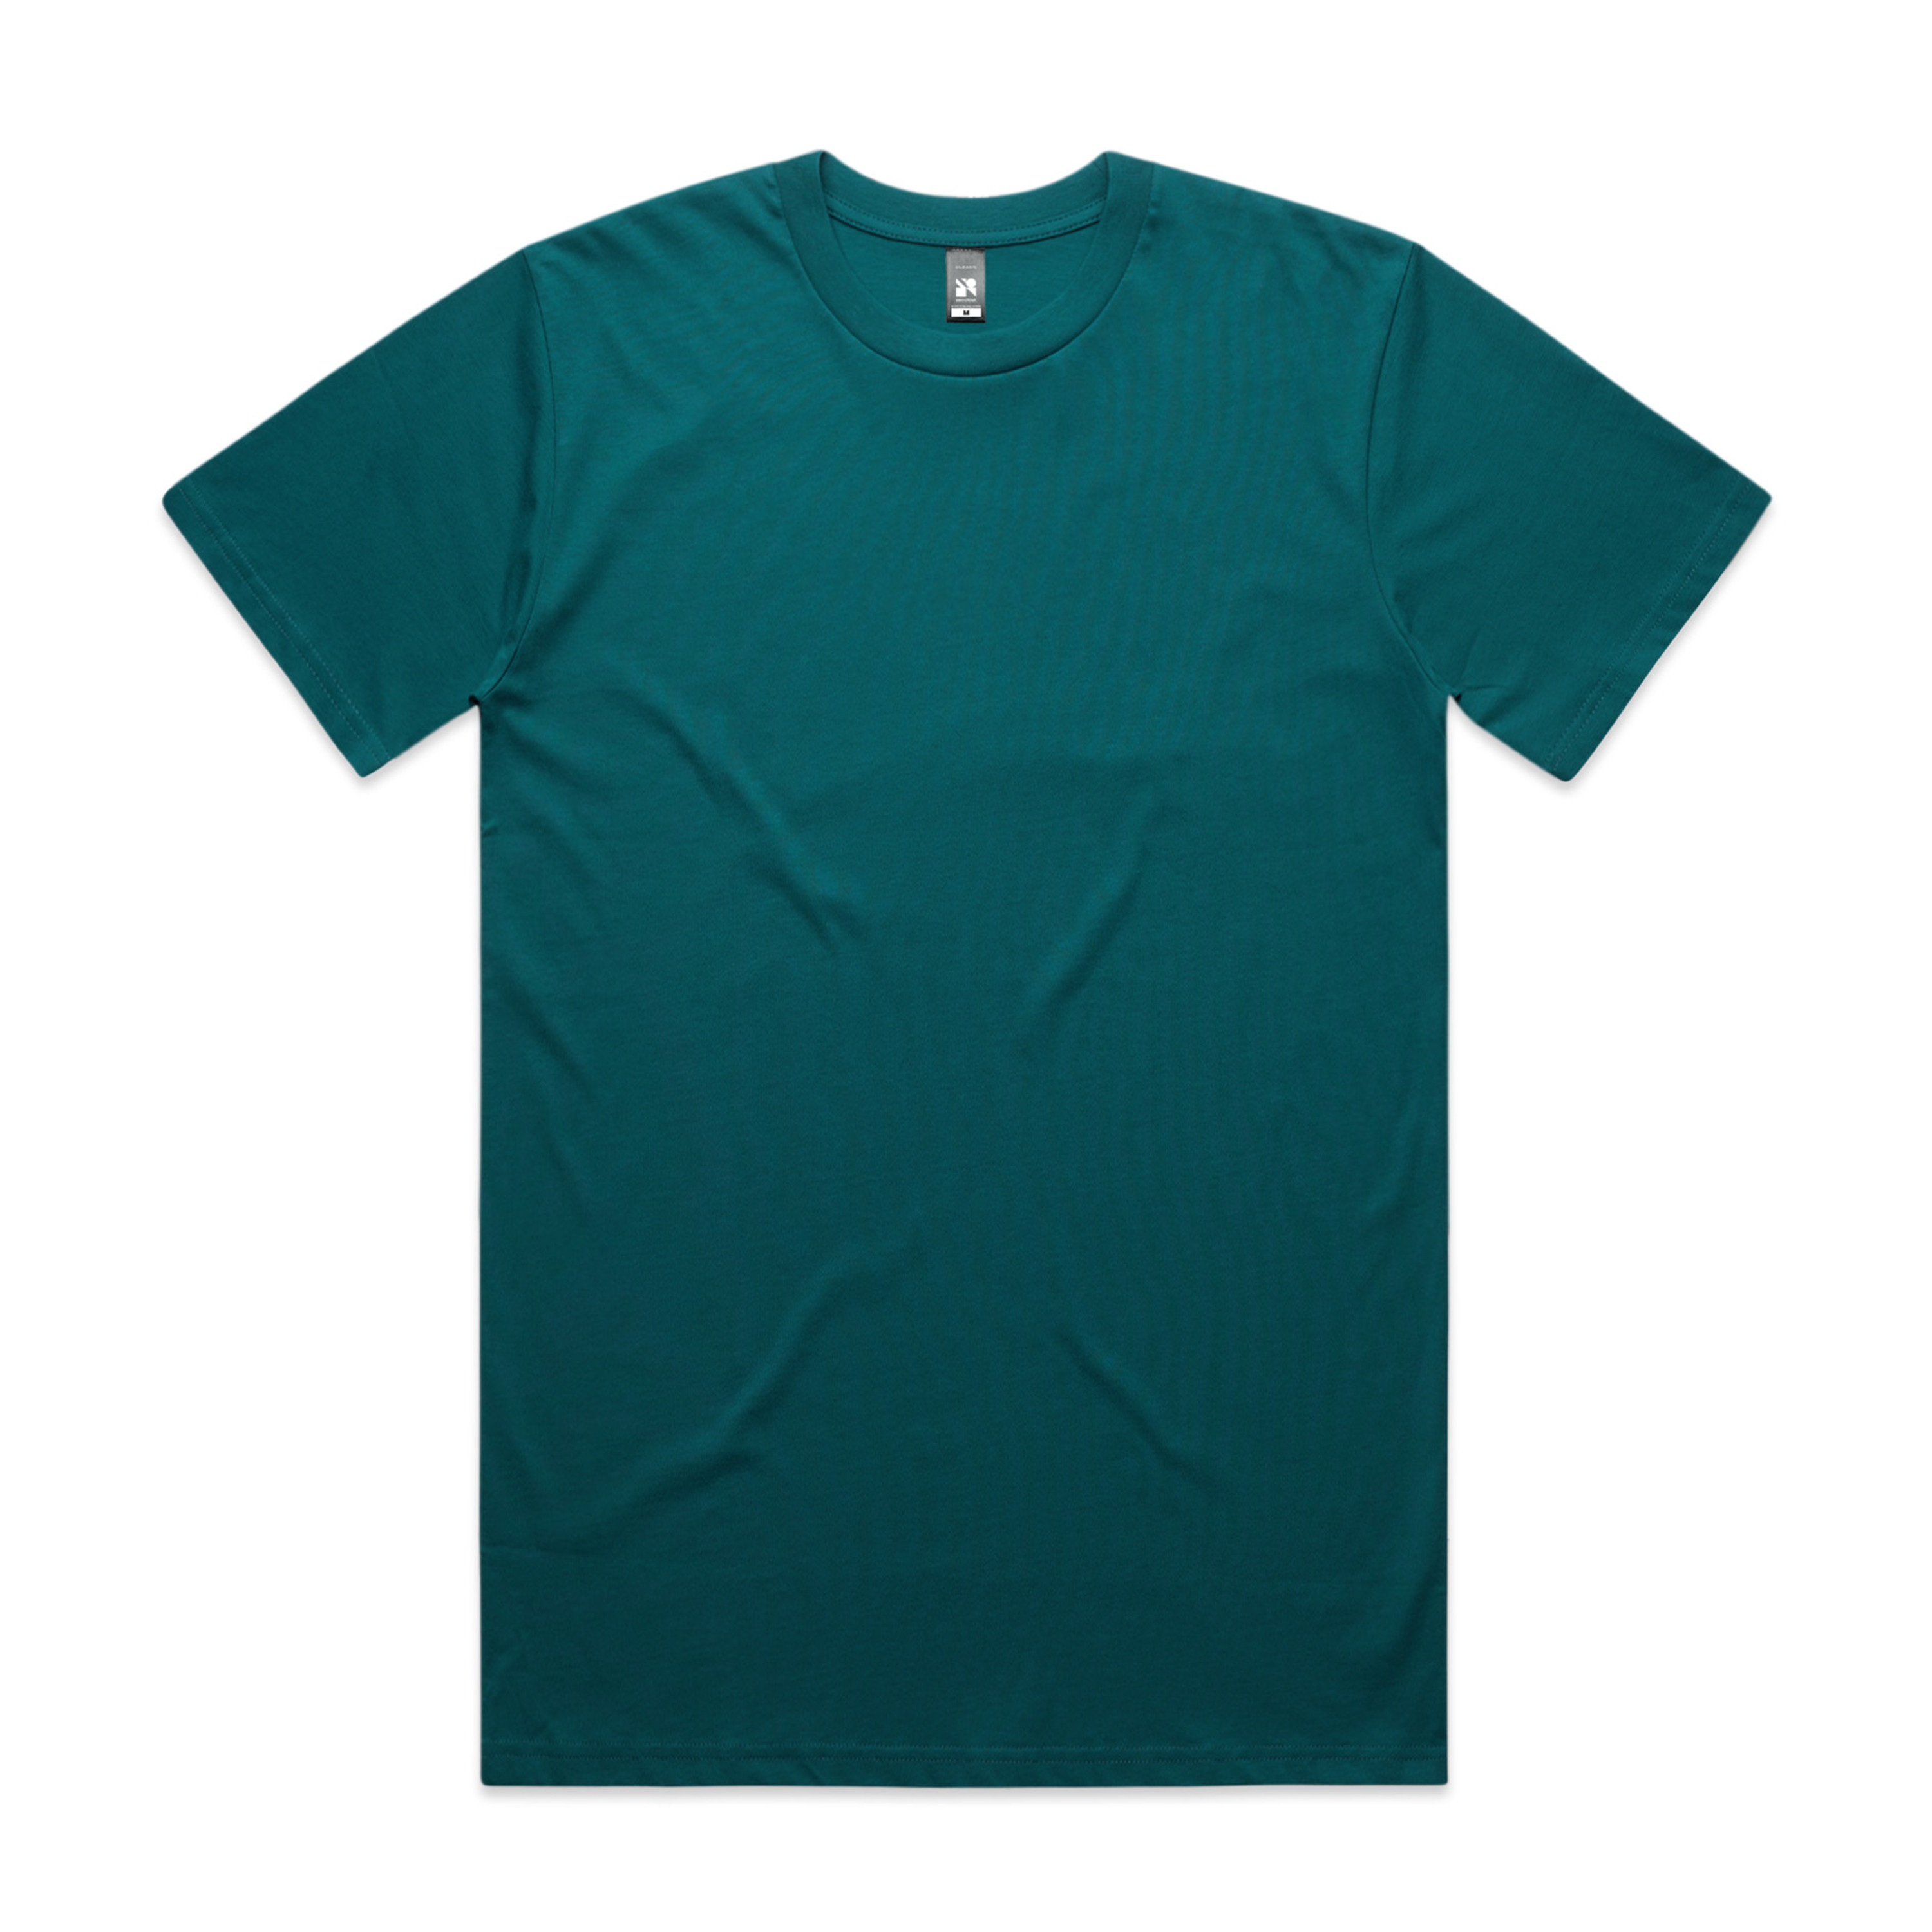 Men's Regular Guy Classic T-shirt, 4XL Teal Blue